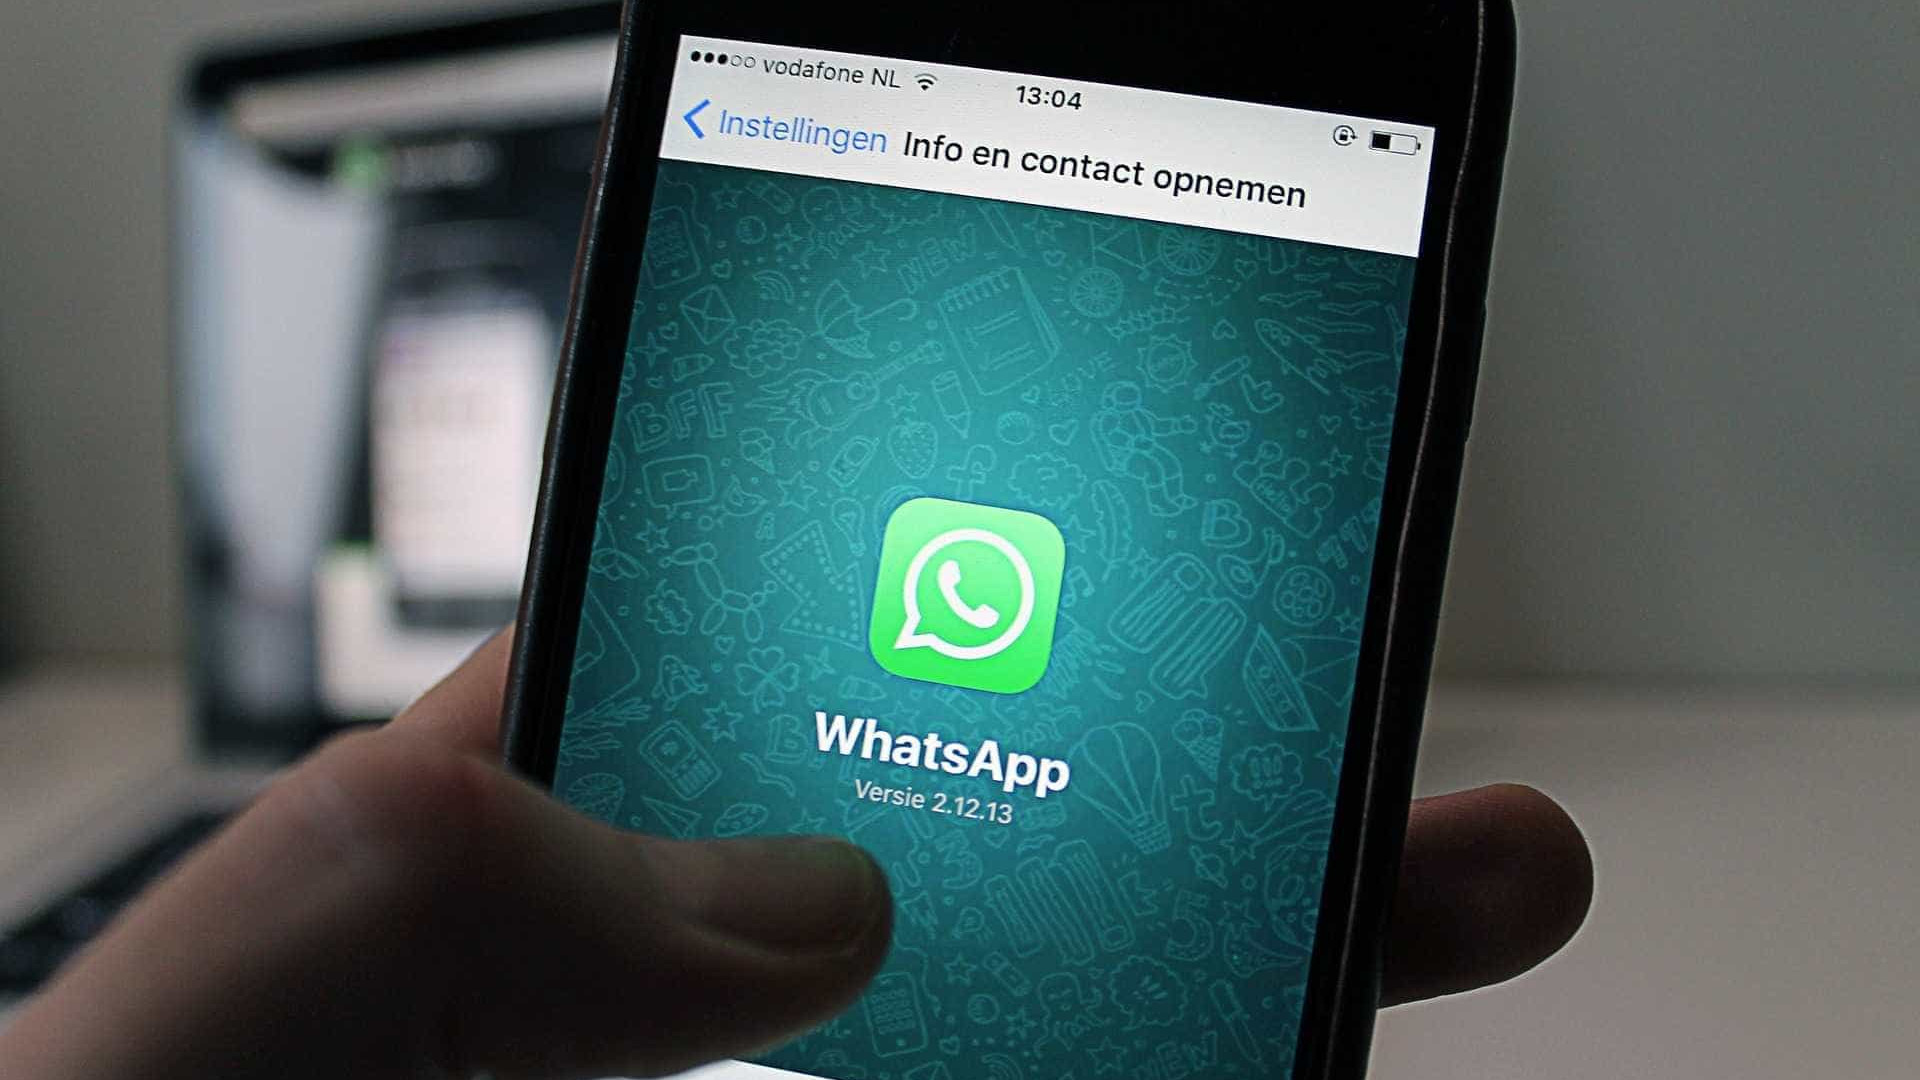 WhatsApp permitirá remover 
mensagens em versão web